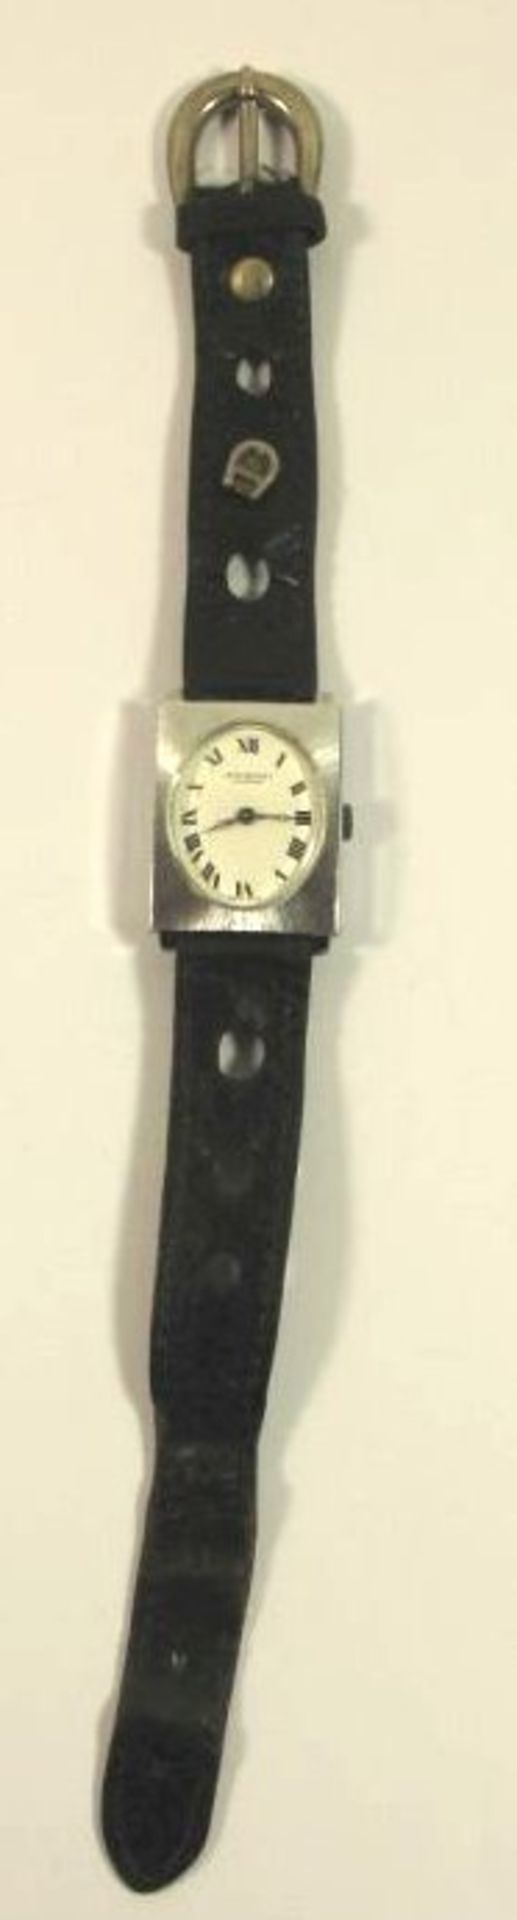 DAU "Jean Perret", Kronenaufzug, Werk läuft, Aigner-Armband dieses mit Tragespuren, 3 x 2cm. - Bild 3 aus 3